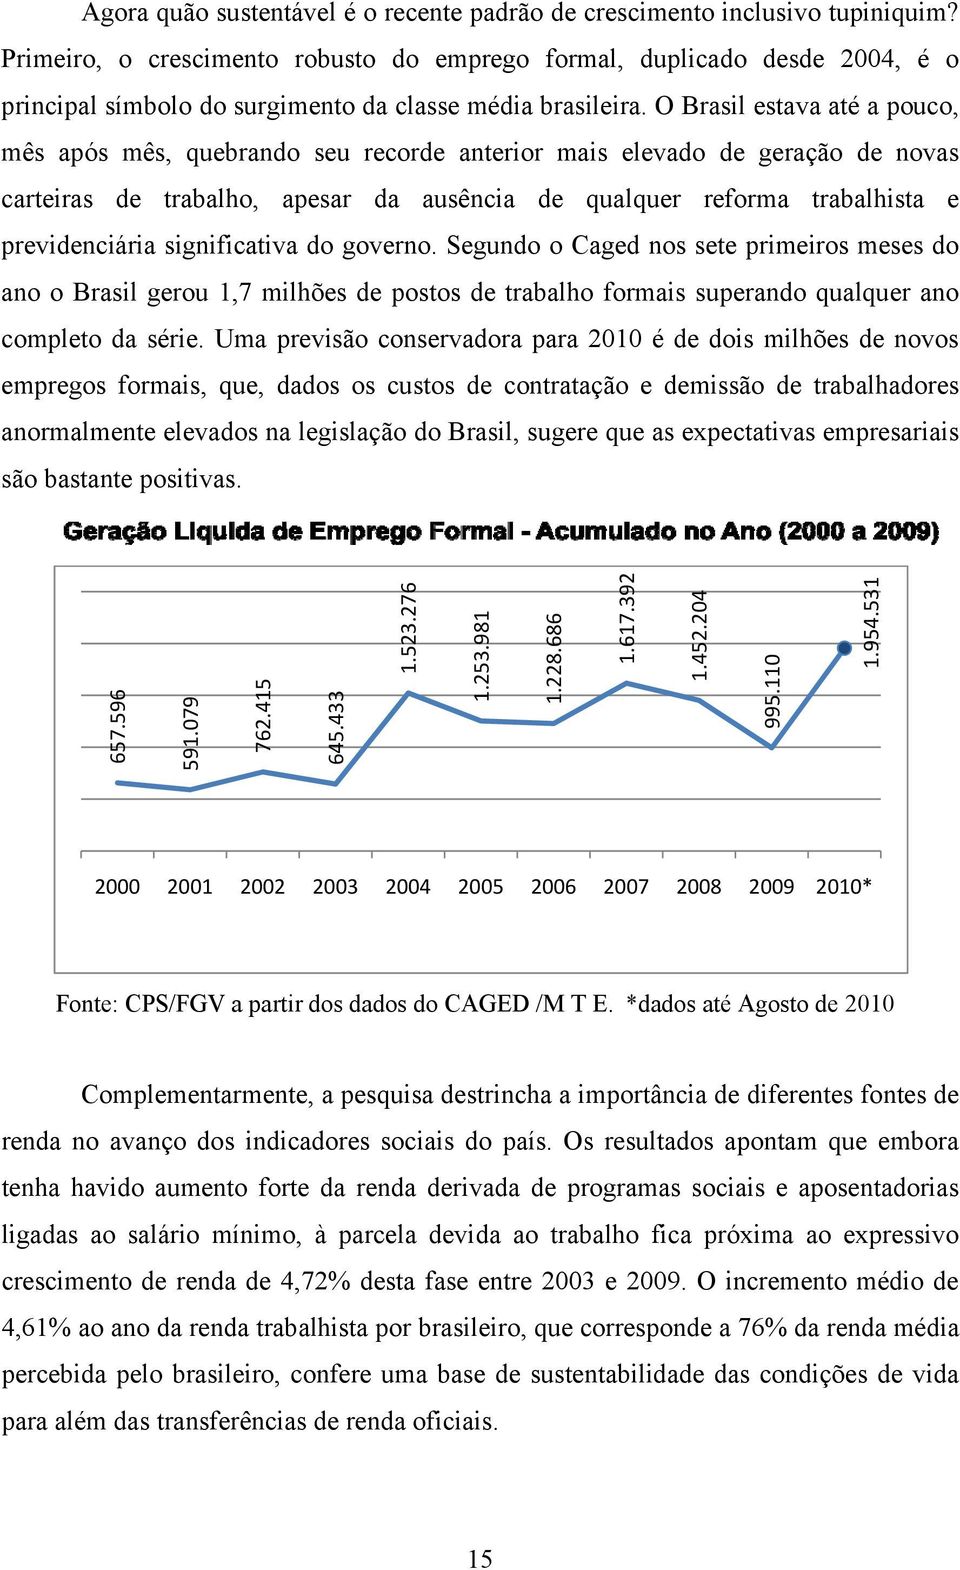 O Brasil estava até a pouco, mês após mês, quebrando seu recorde anterior mais elevado de geração de novas carteiras de trabalho, apesar da ausência de qualquer reforma trabalhista e previdenciária